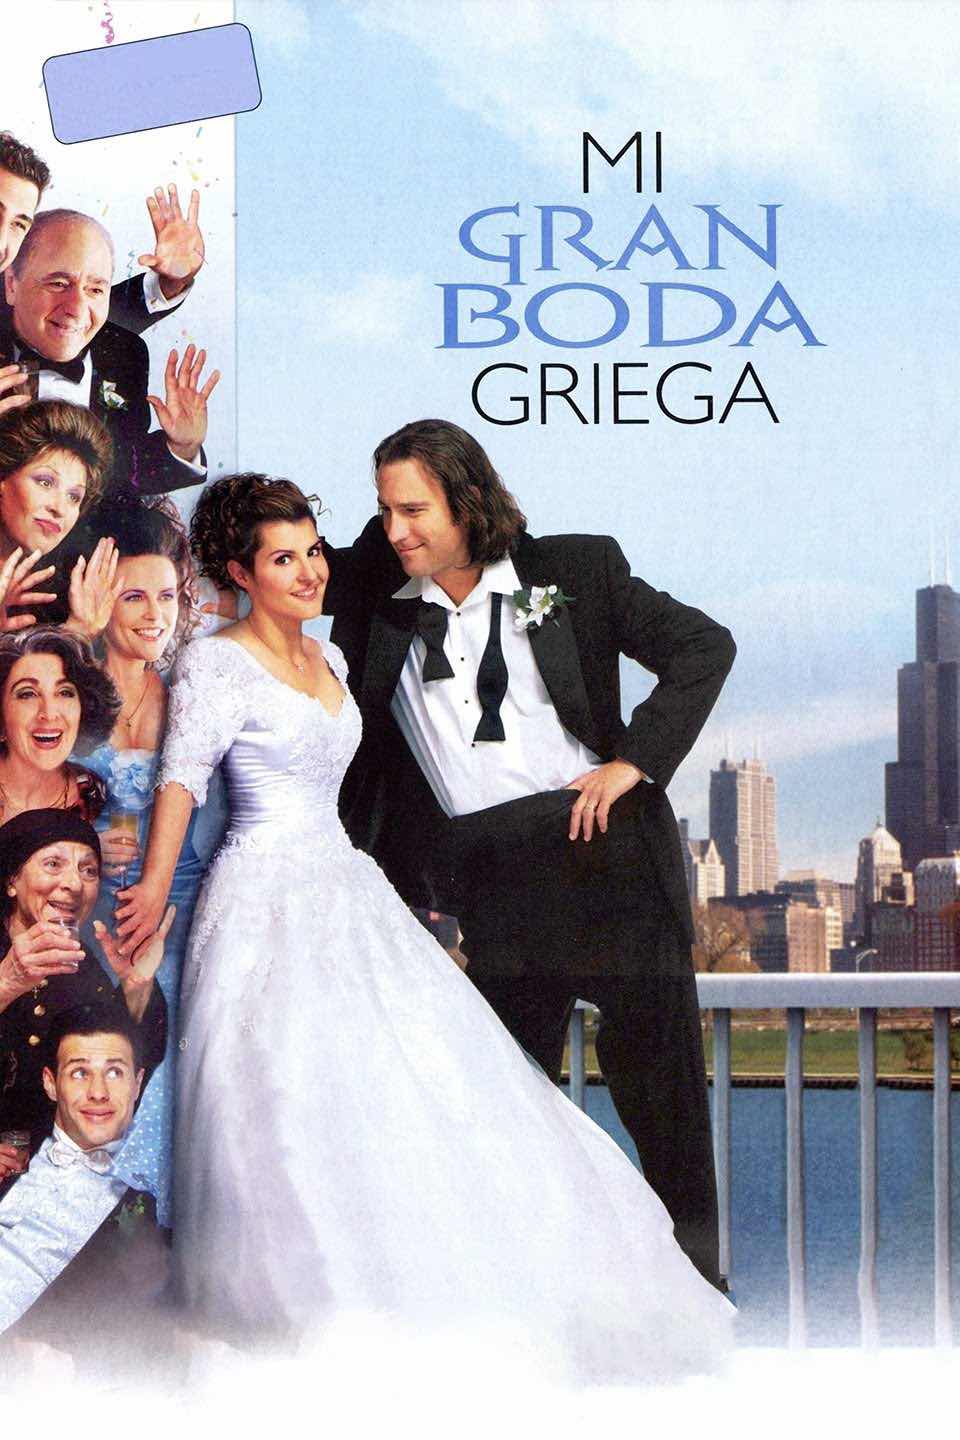 Cartel de la película “Mi gran boda griega”